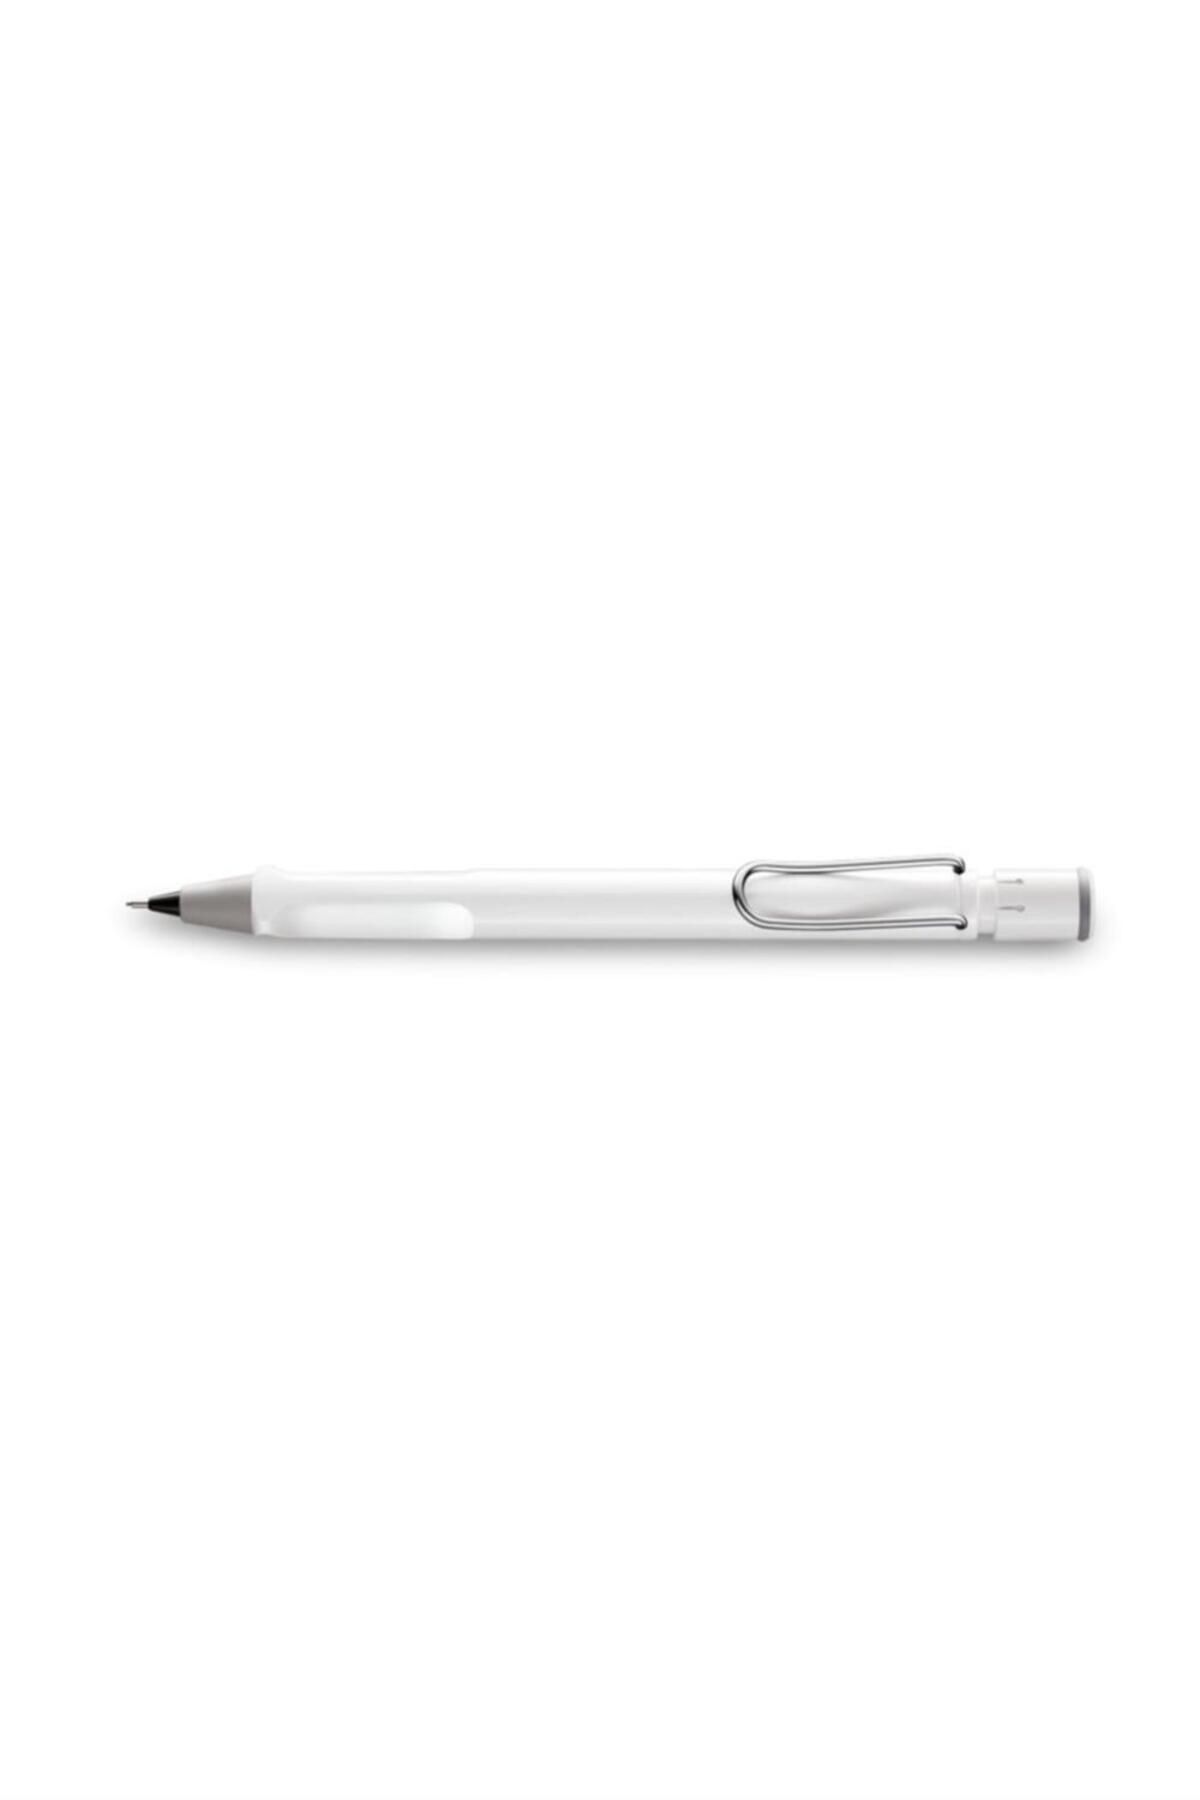 Lamy Safari Versatil (Uçlu) Kalem Beyaz 0,5